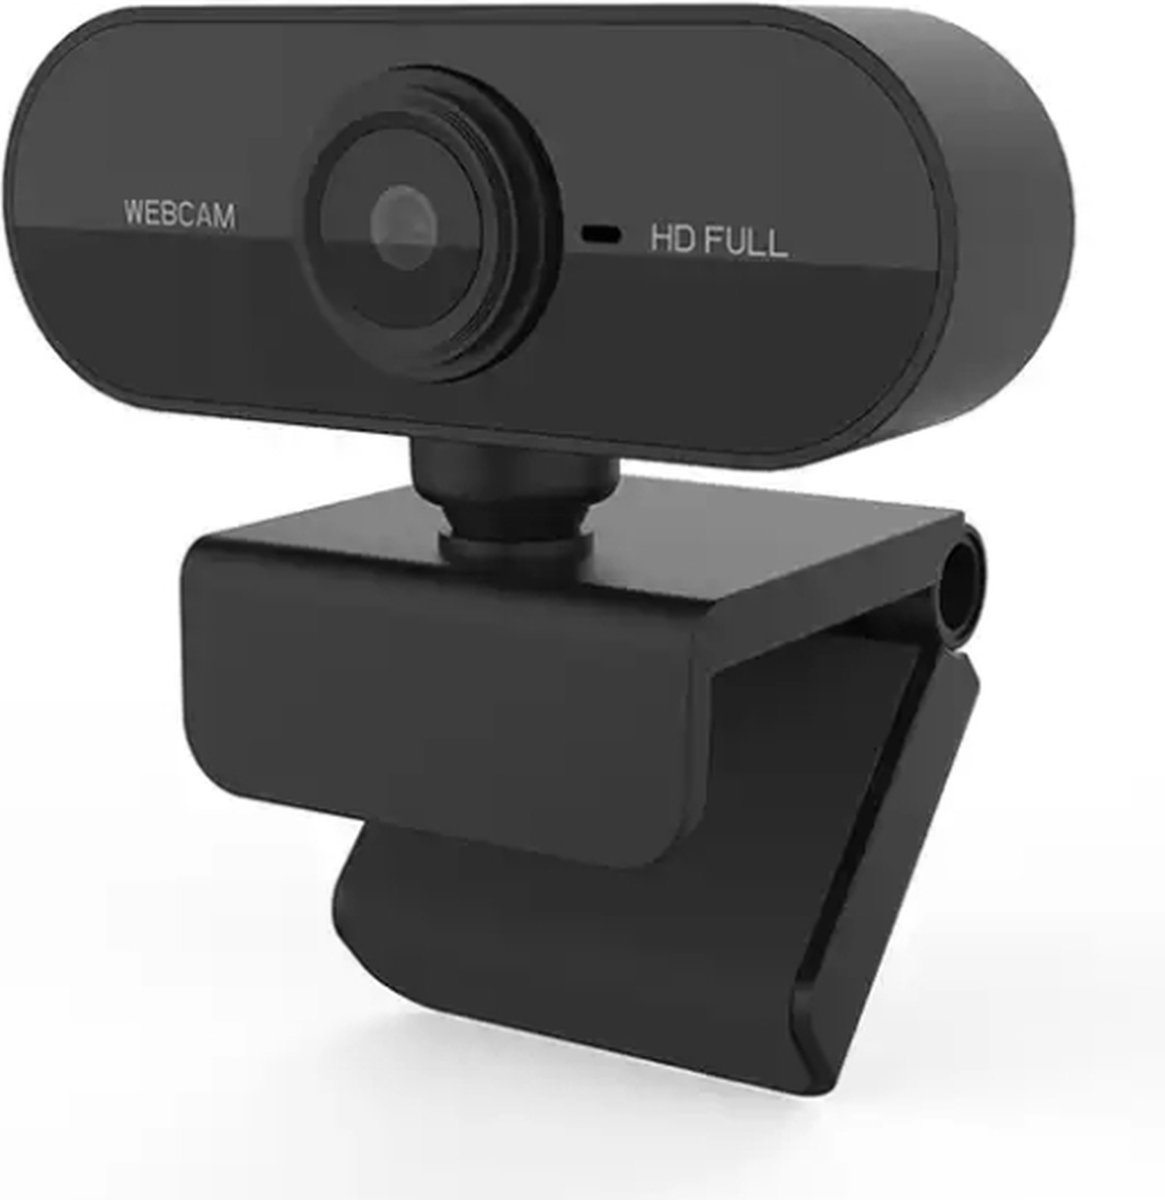 Living Needs Webcam - Webcam voor PC - 1080P Full HD.